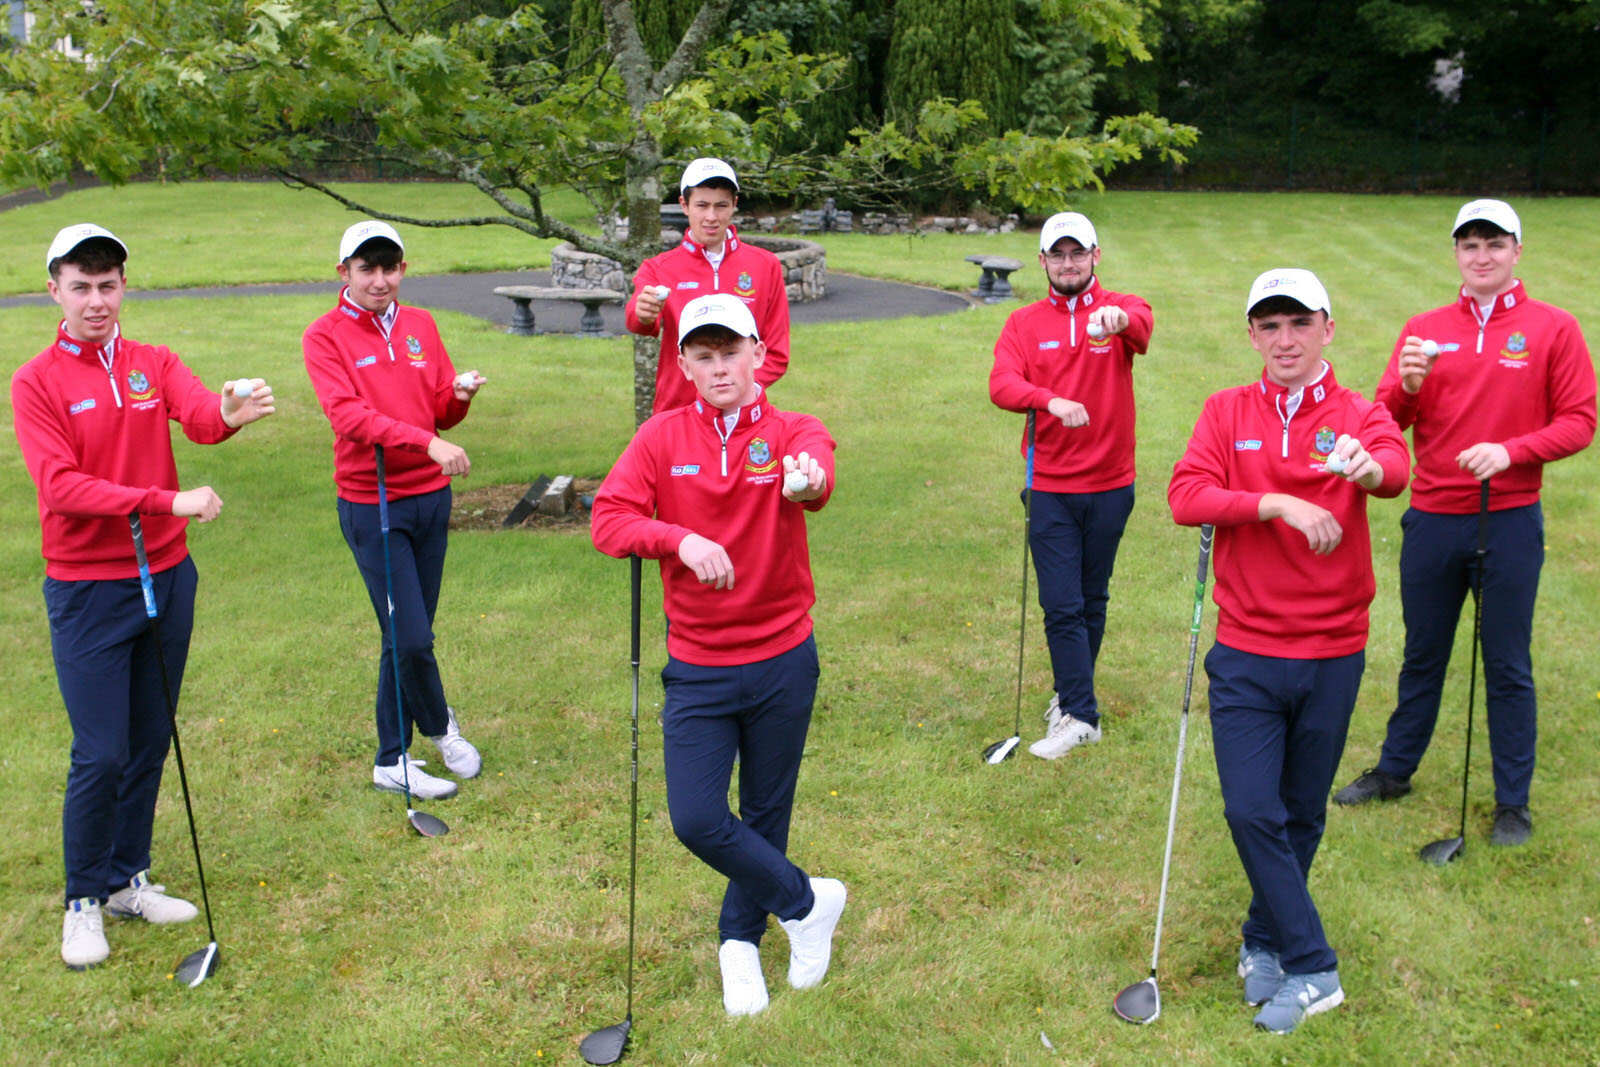 Flogas sponsors CBS Roscommon golf team for Senior Schools Champ